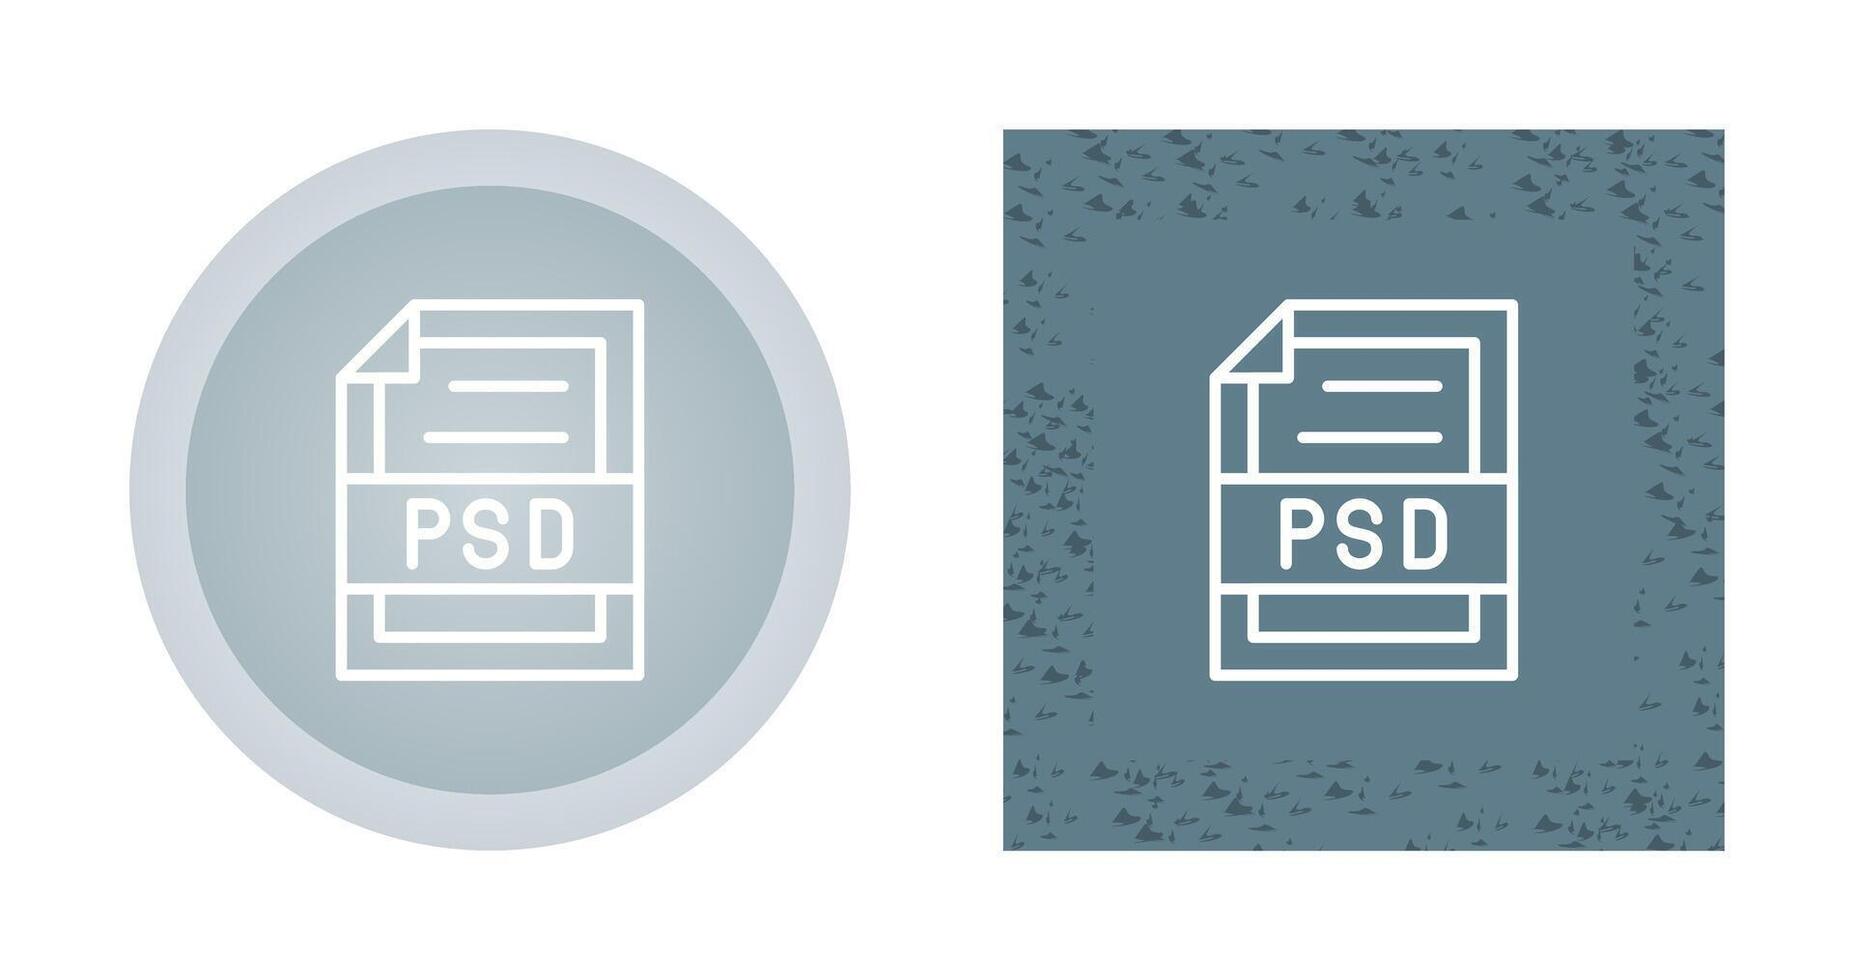 PSD file vettore icona